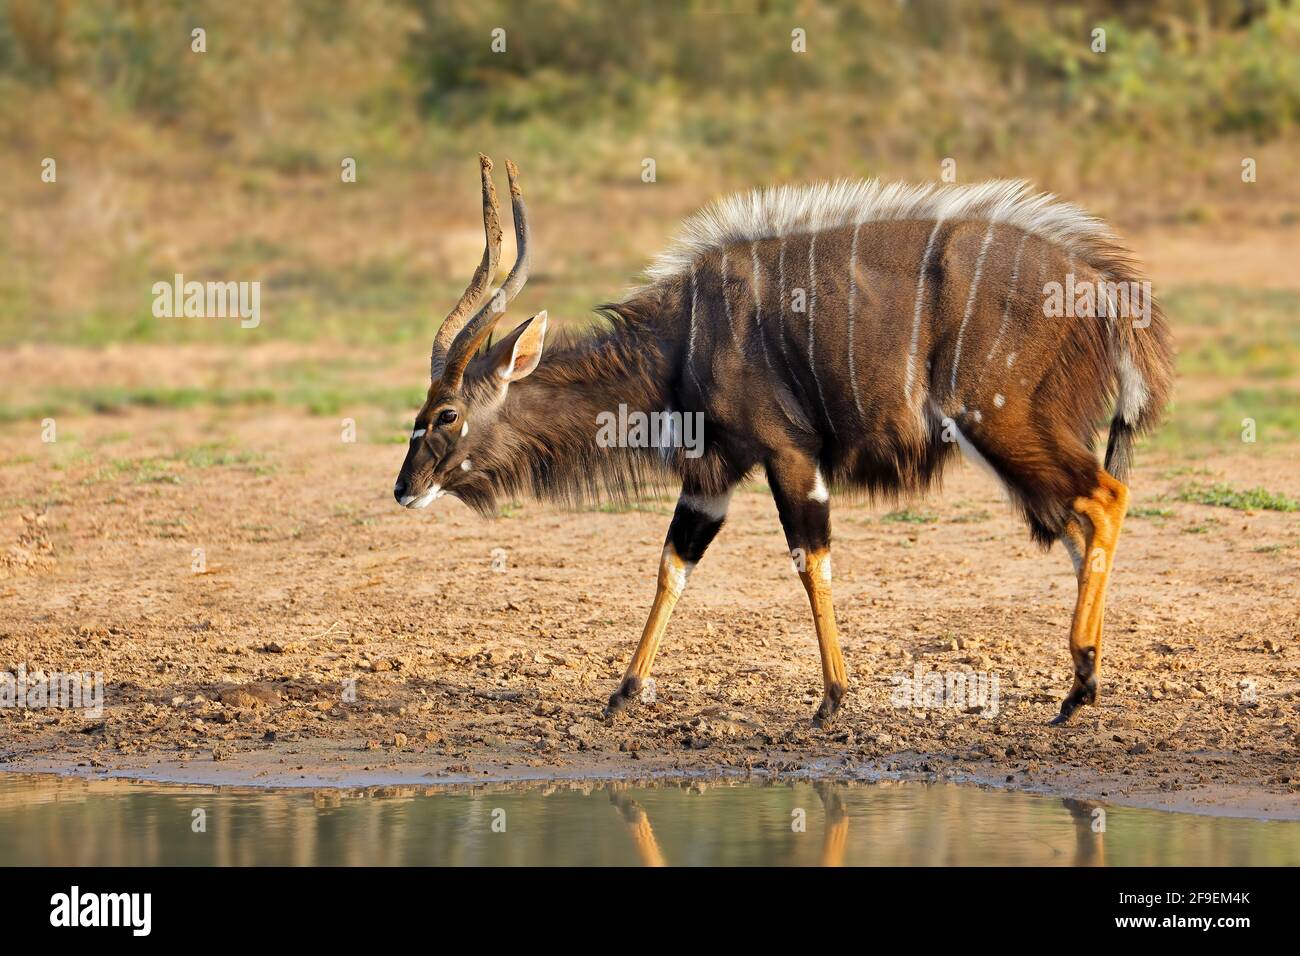 Männliche nyala Antilope (Tragelaphus angasii), Mkuze Game Reserve, Südafrika Stockfoto